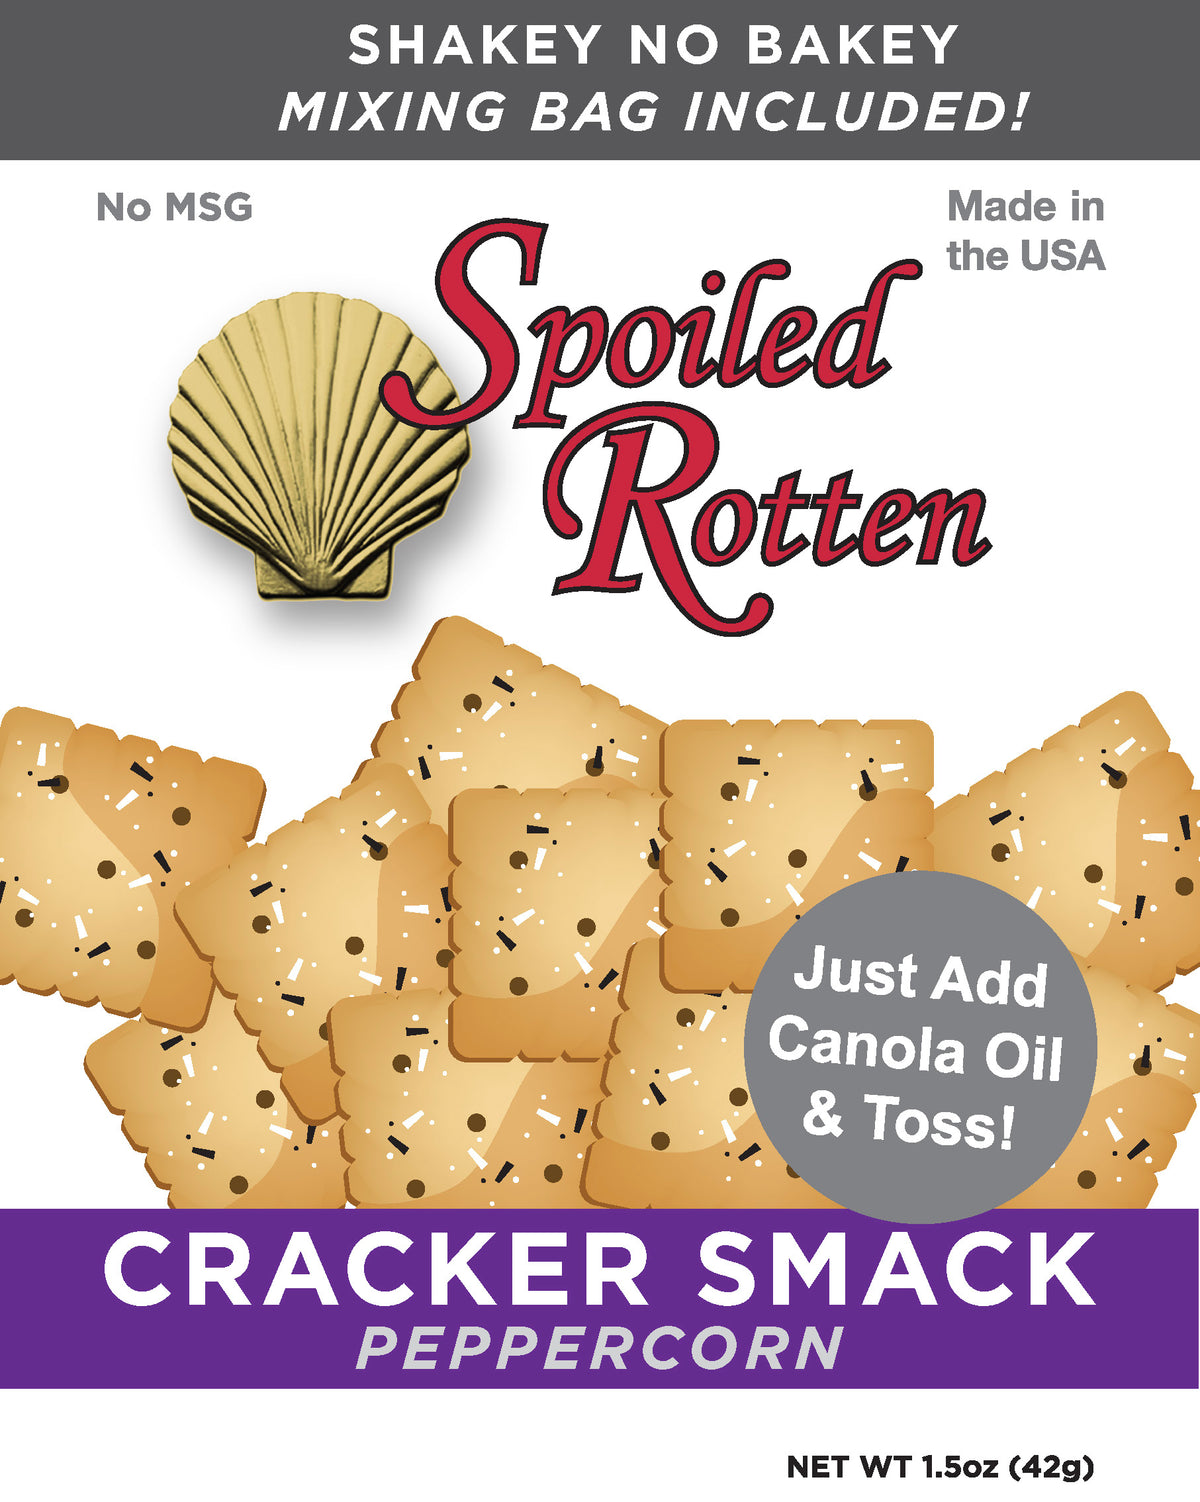 Cracker Smack Peppercorn